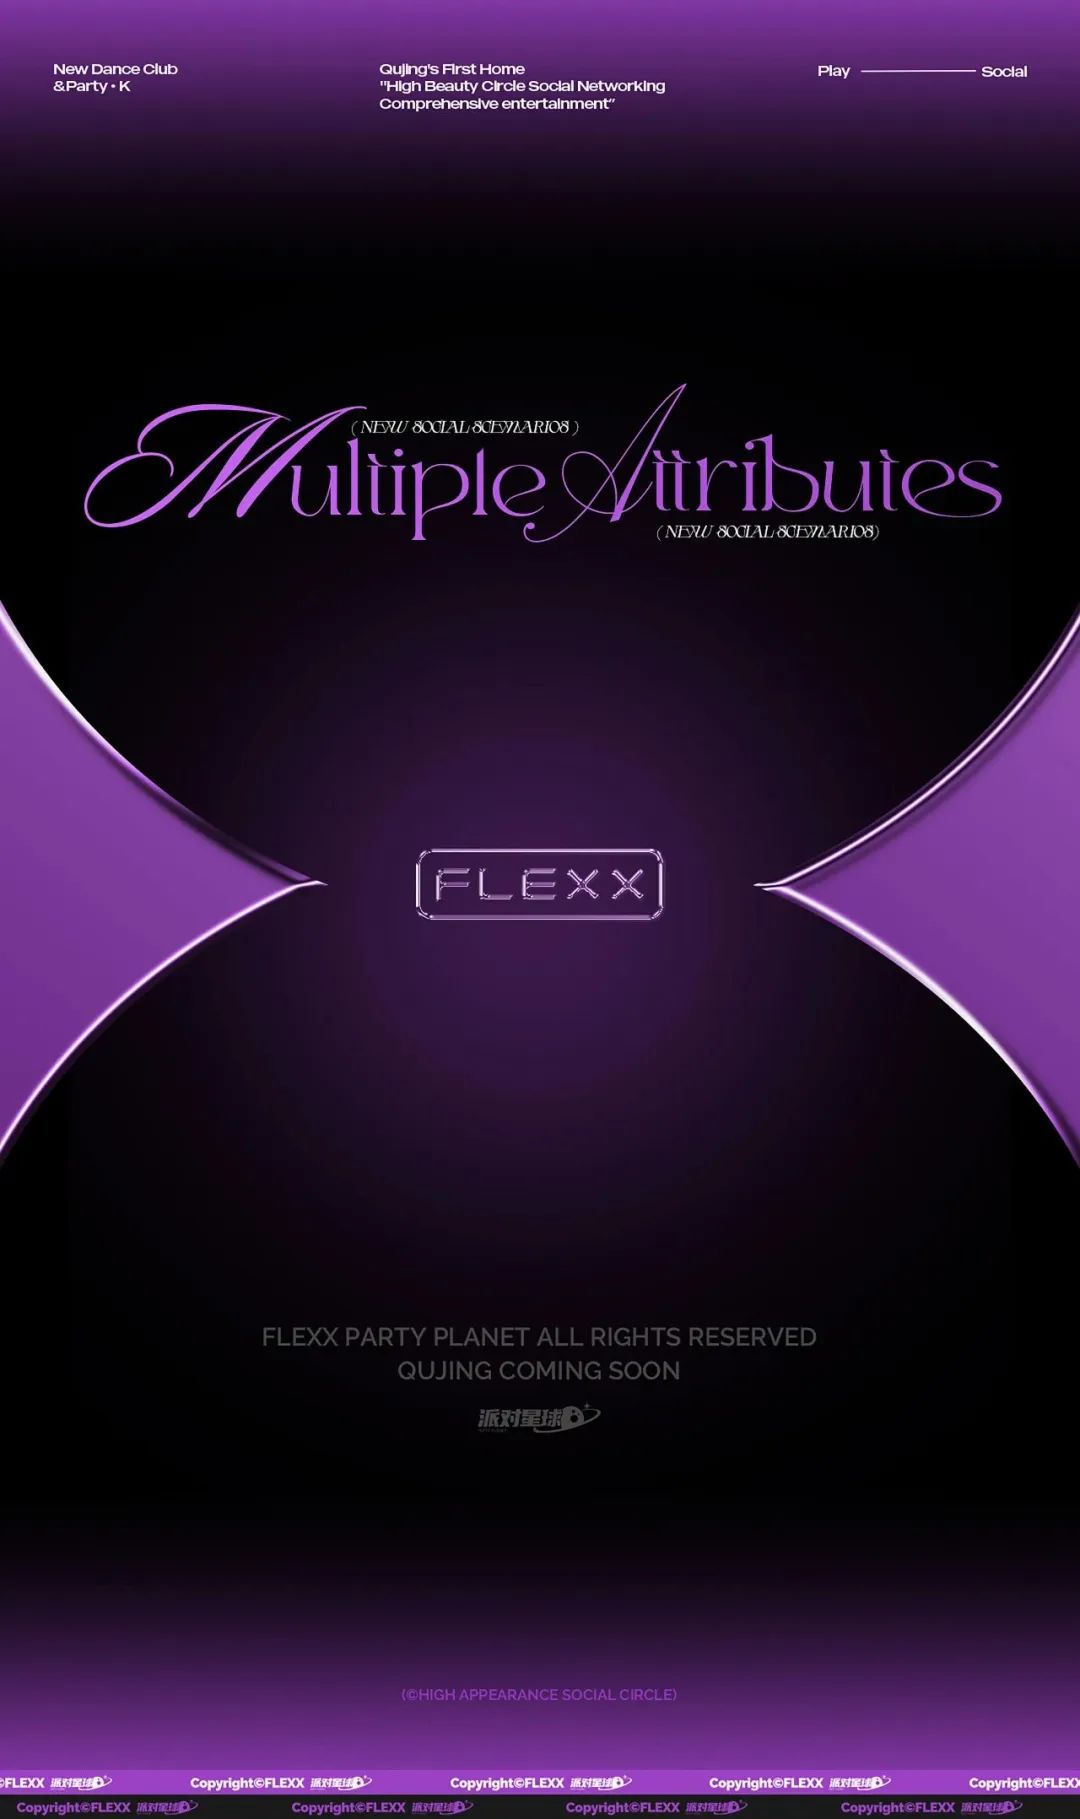 FLEXX 派对星球丨玩乐进阶 新篇将启-昆明菲利克斯酒吧/FLEXX CLUB